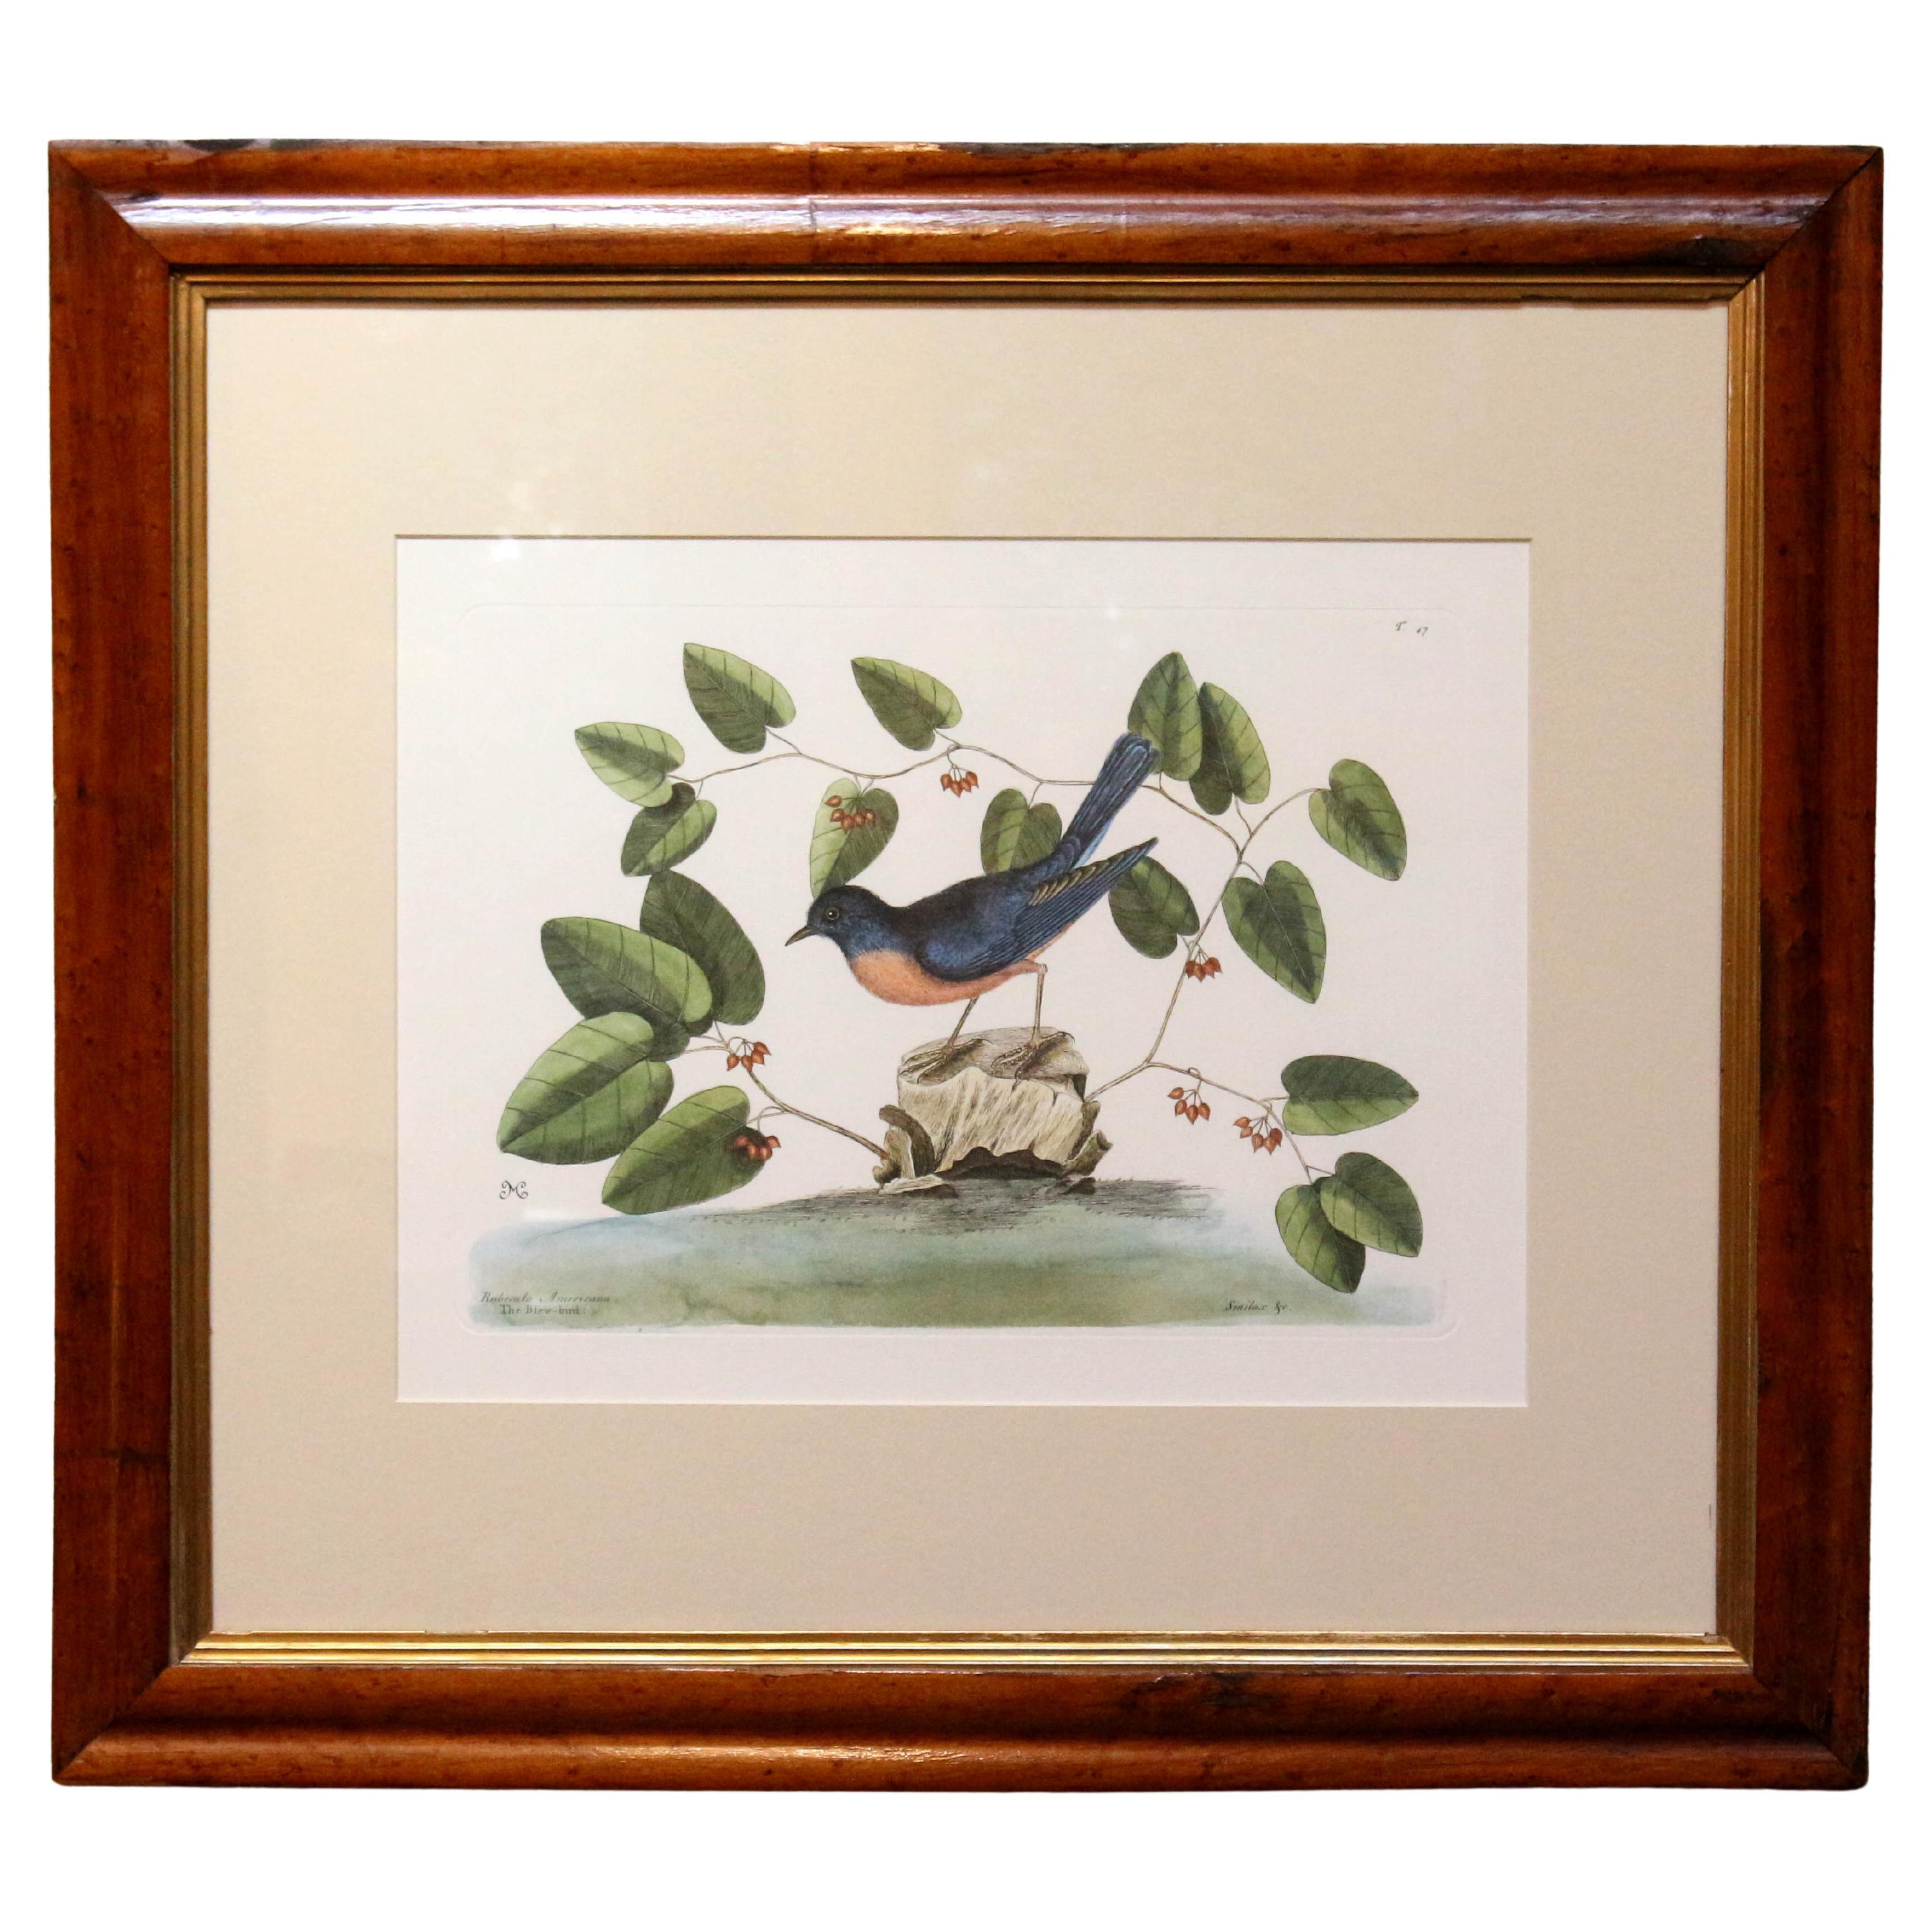 Impression « The Blew-bird » du 20e siècle, copie de la gravure de Mark Catesby